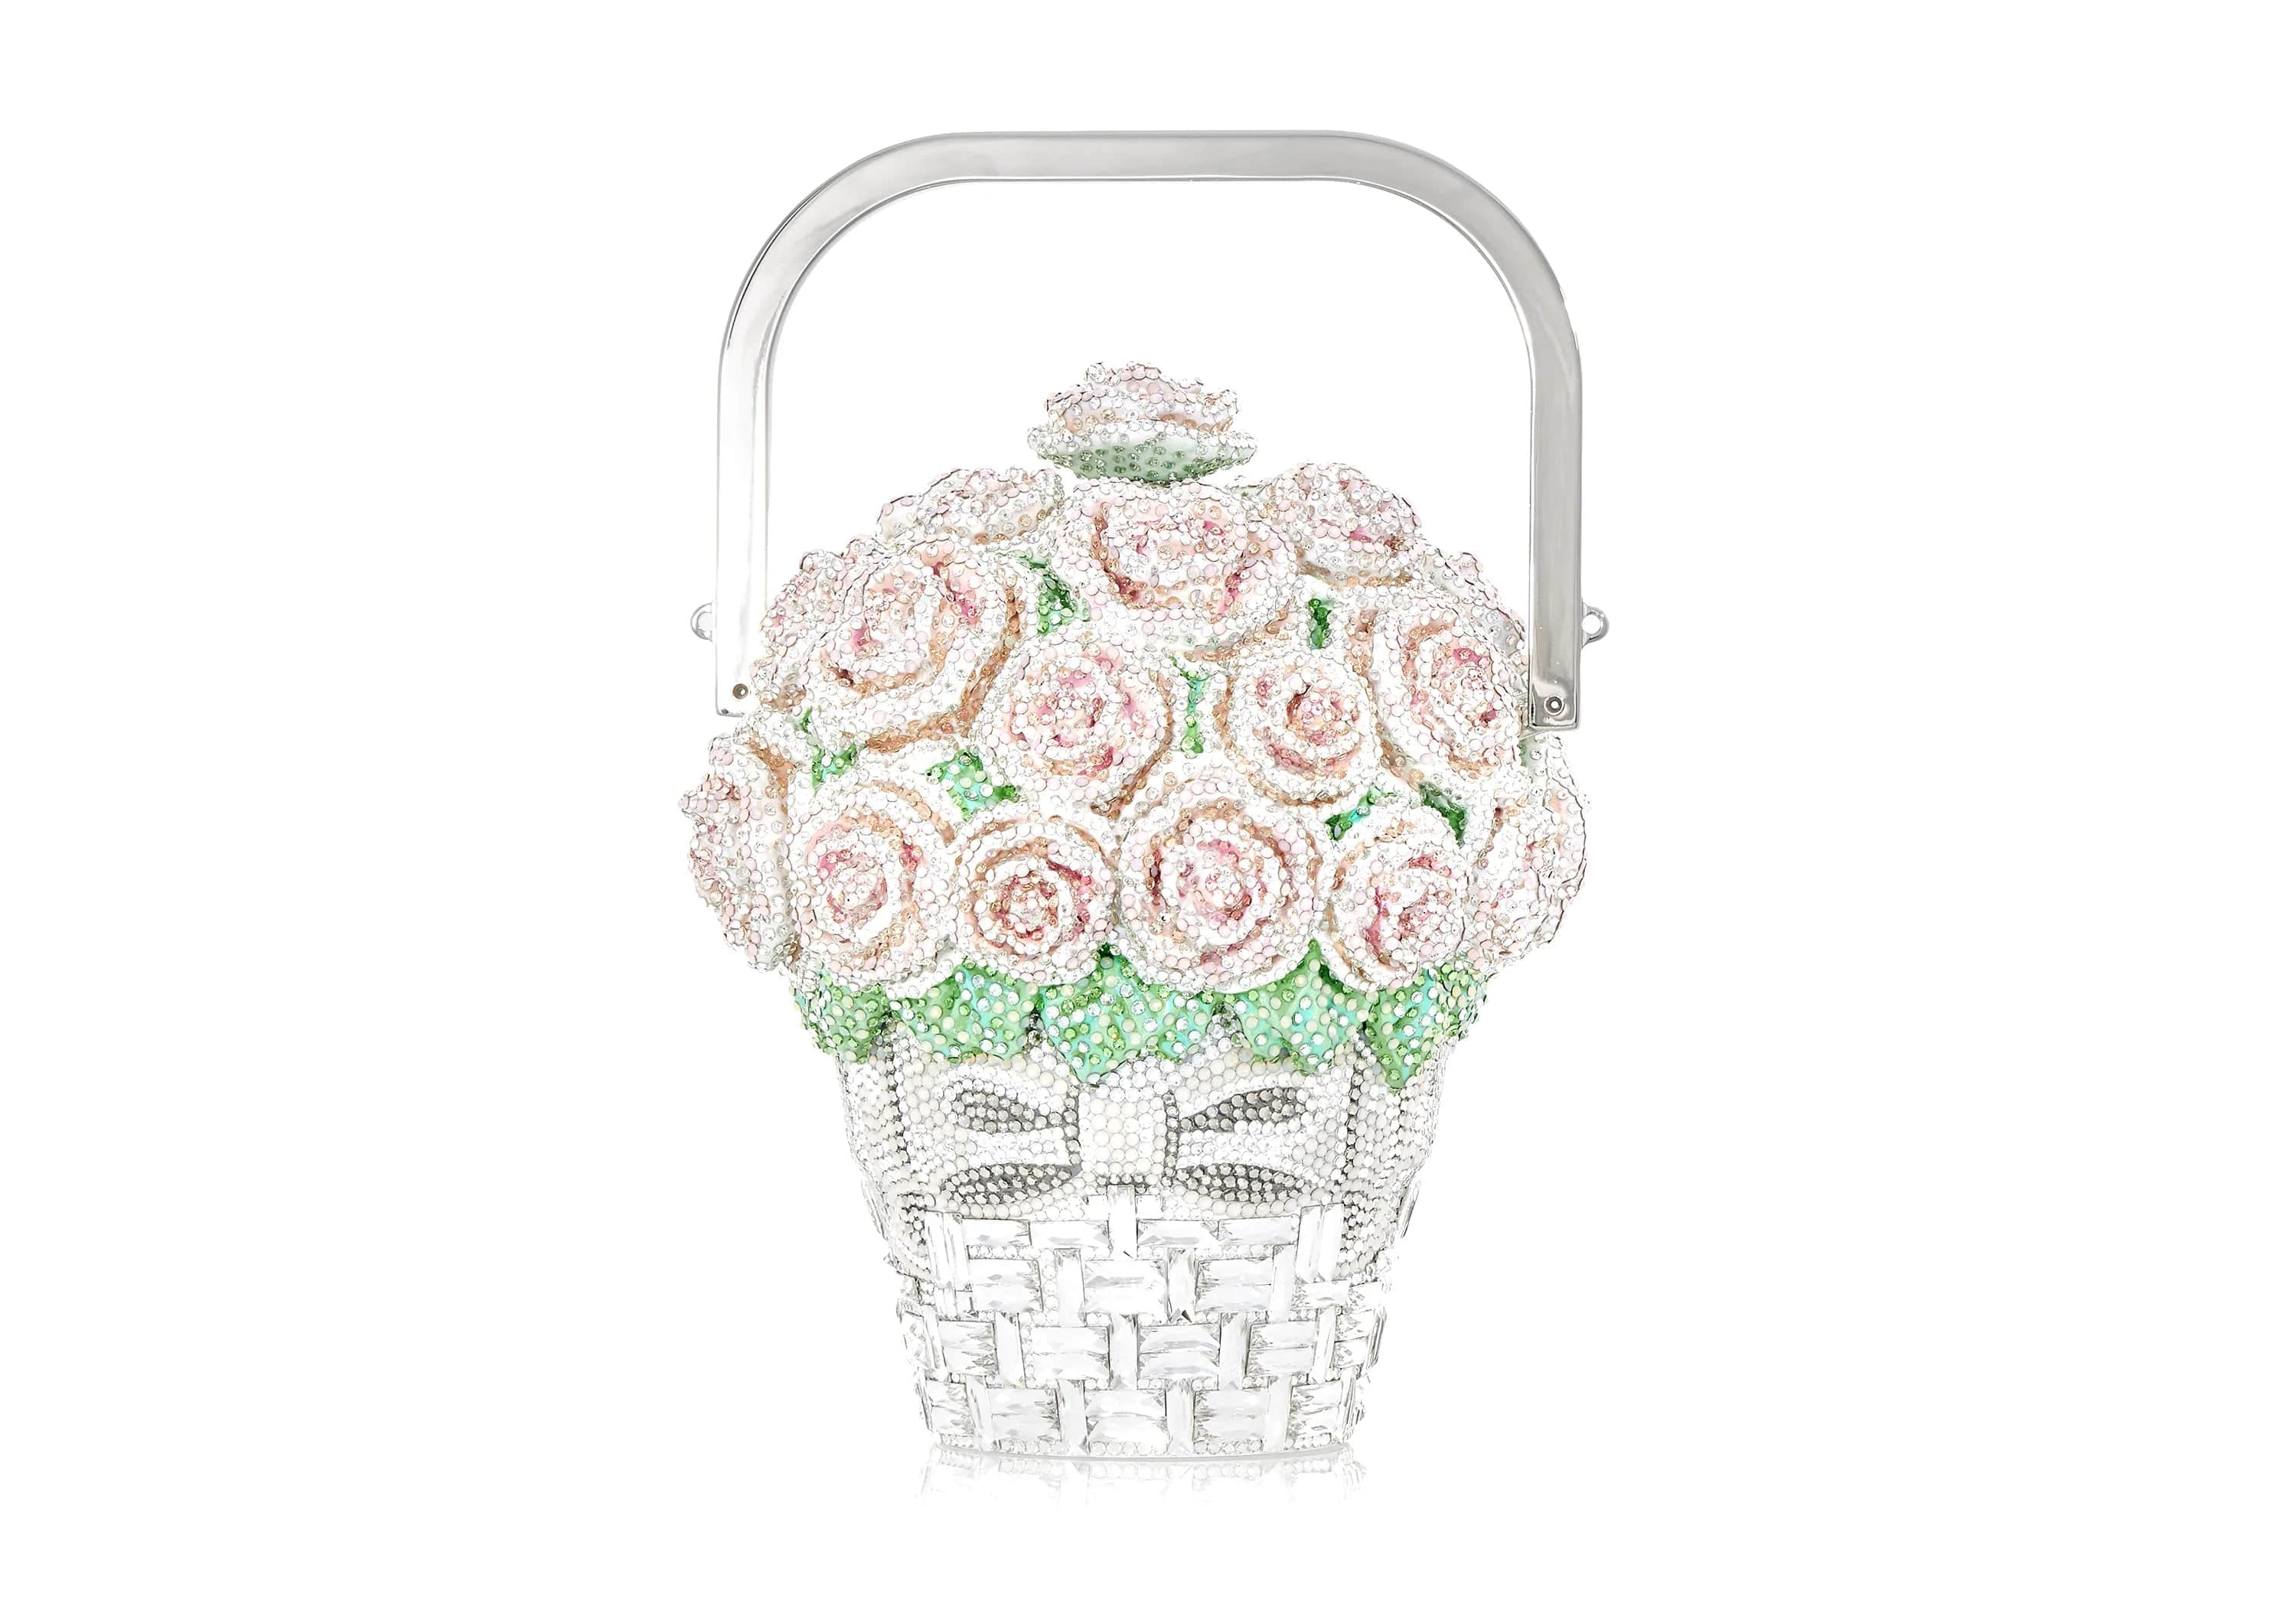 Judith Leiber Basket of Roses Clutch Bag